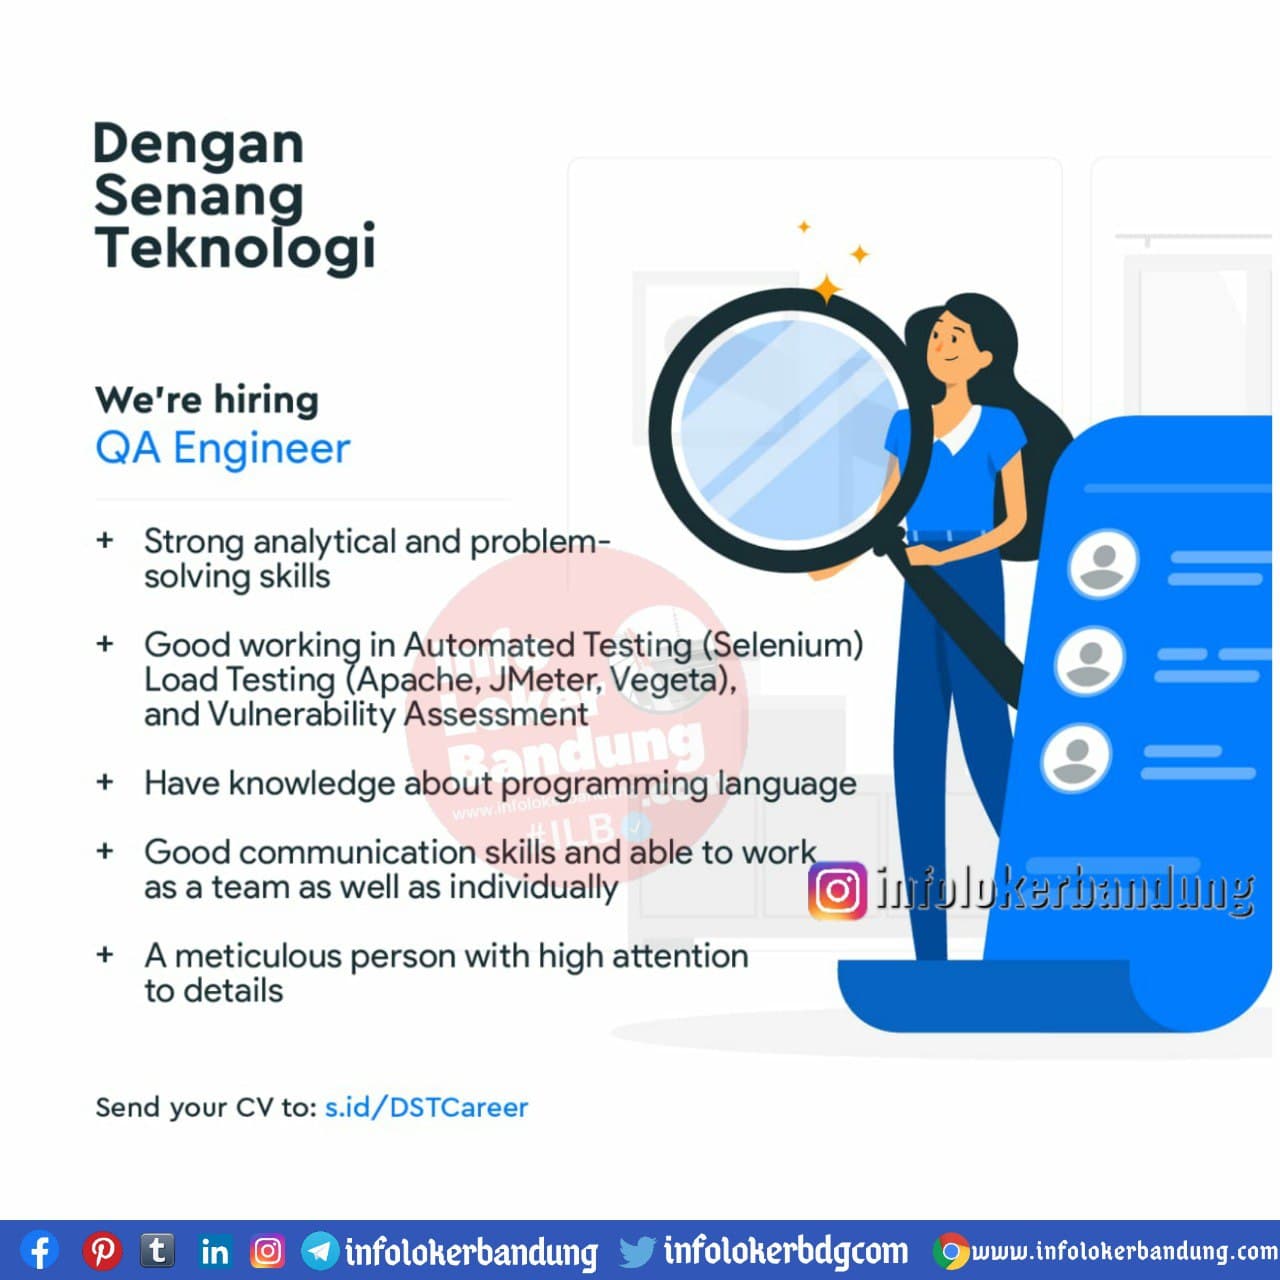 Lowongan Kerja Dengan Senang Teknologi Bandung November 2020